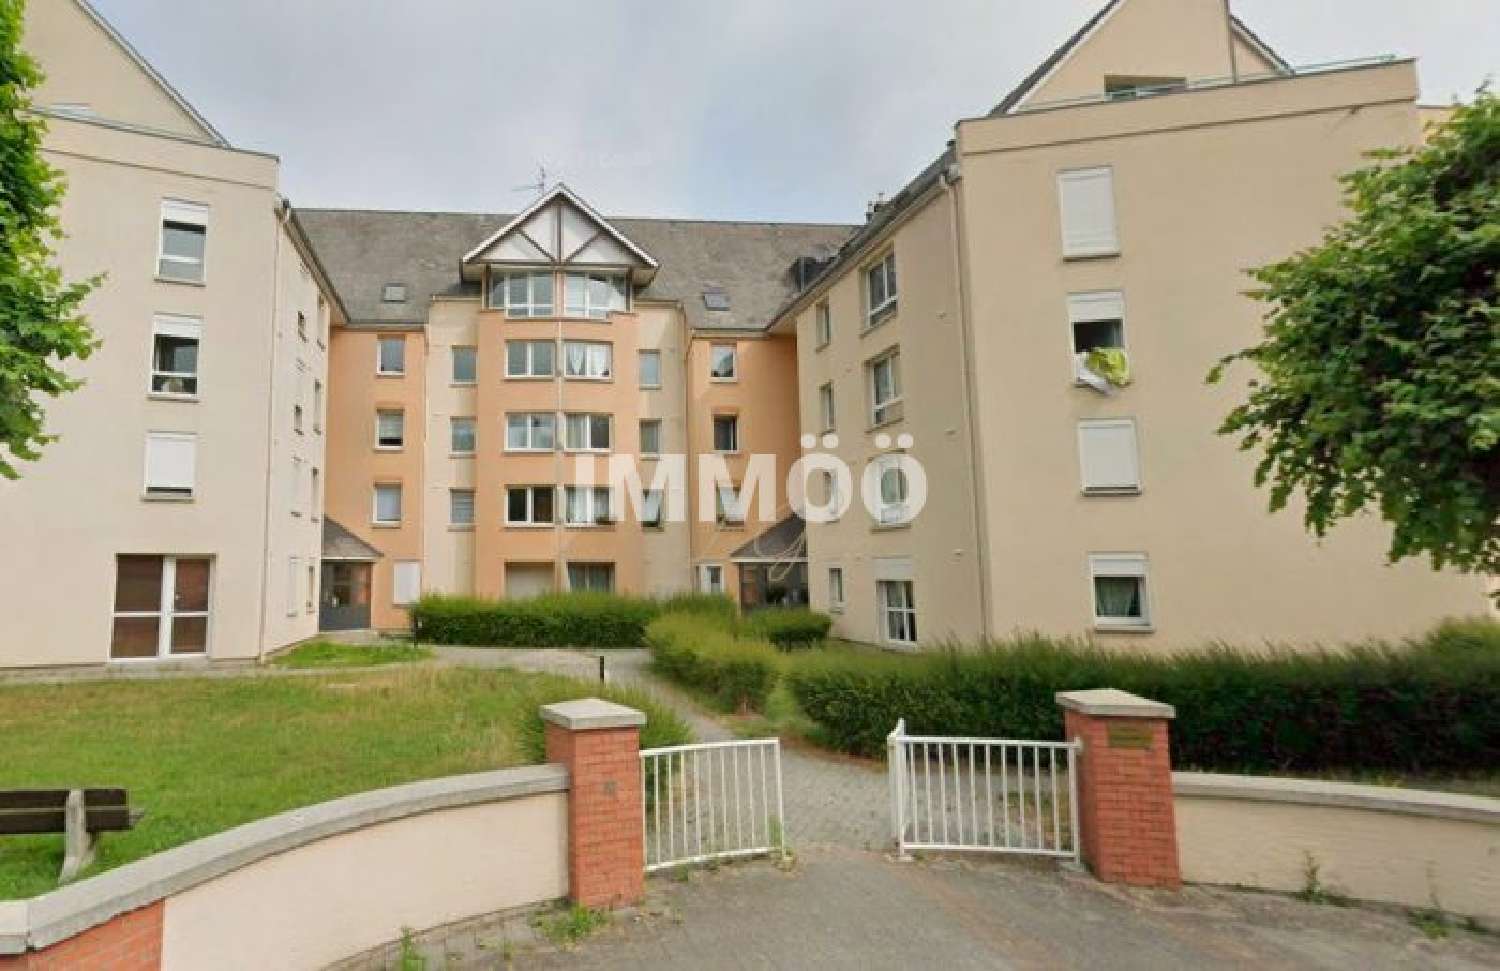 Barentin Seine-Maritime Wohnung/ Apartment Bild 6834124